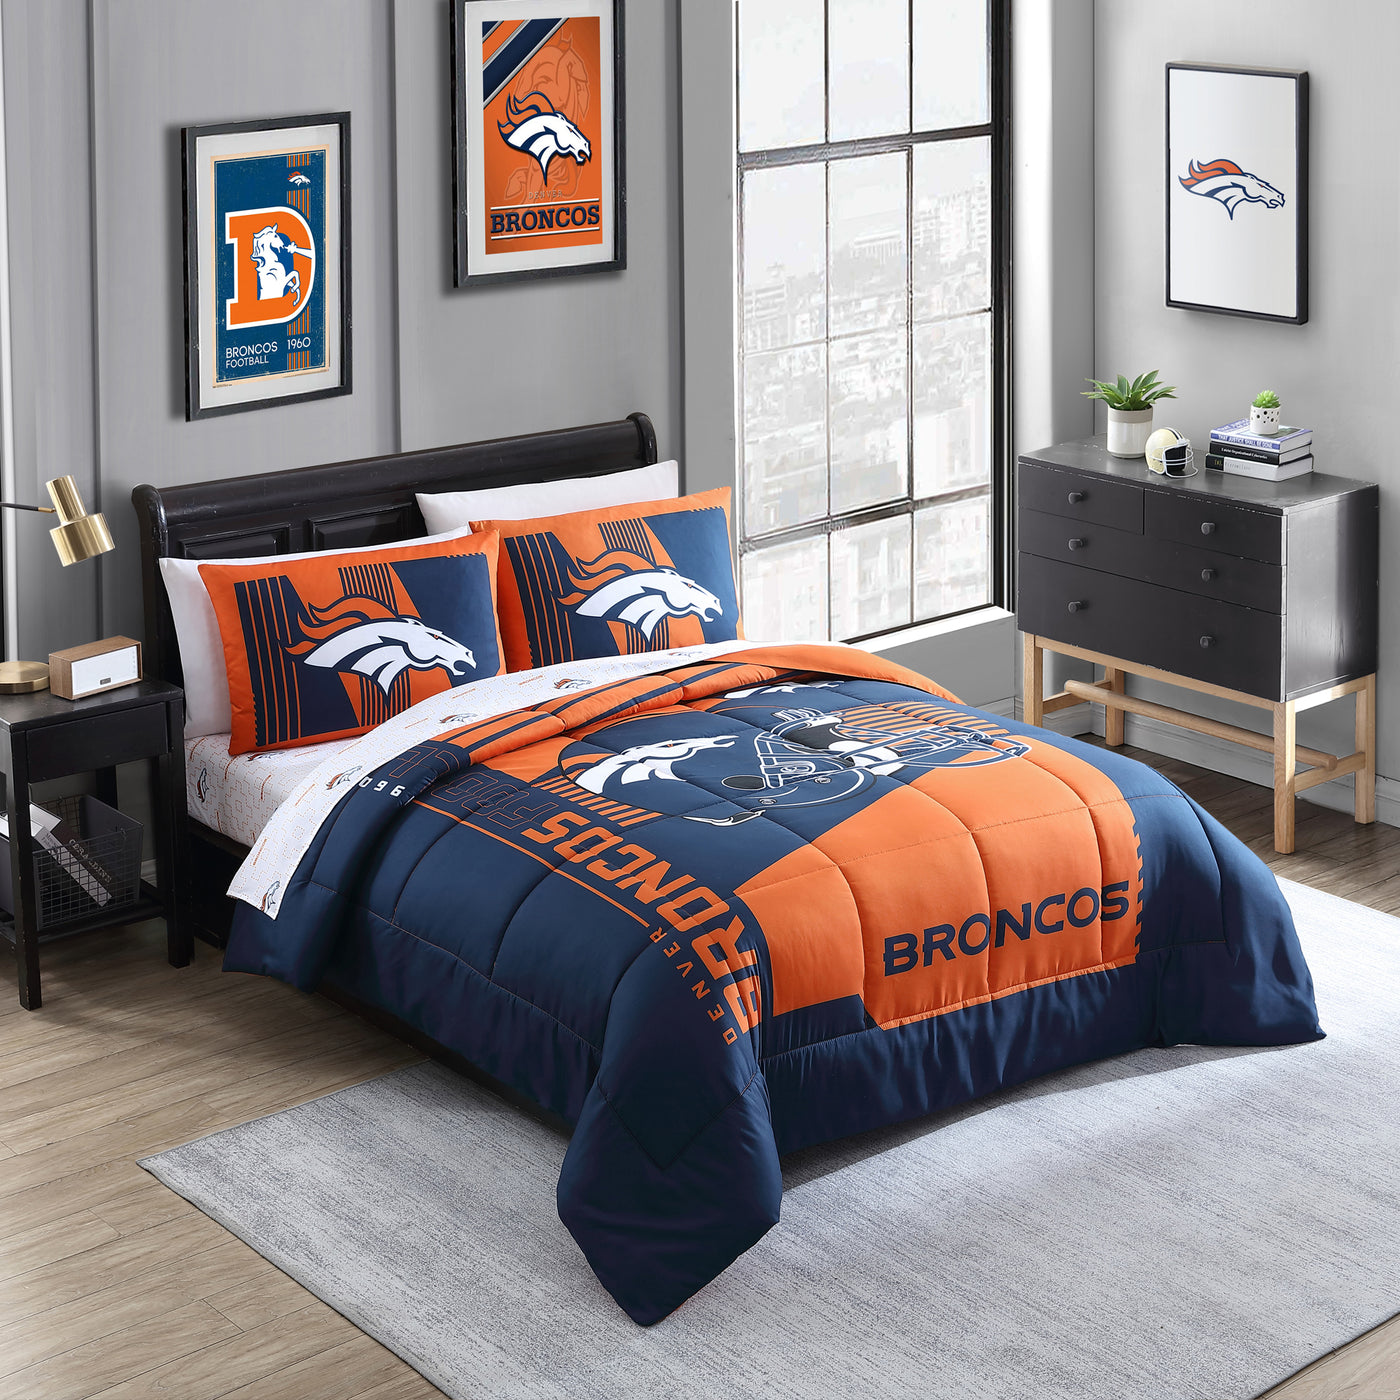 Denver Broncos Status Bed In A Bag Full